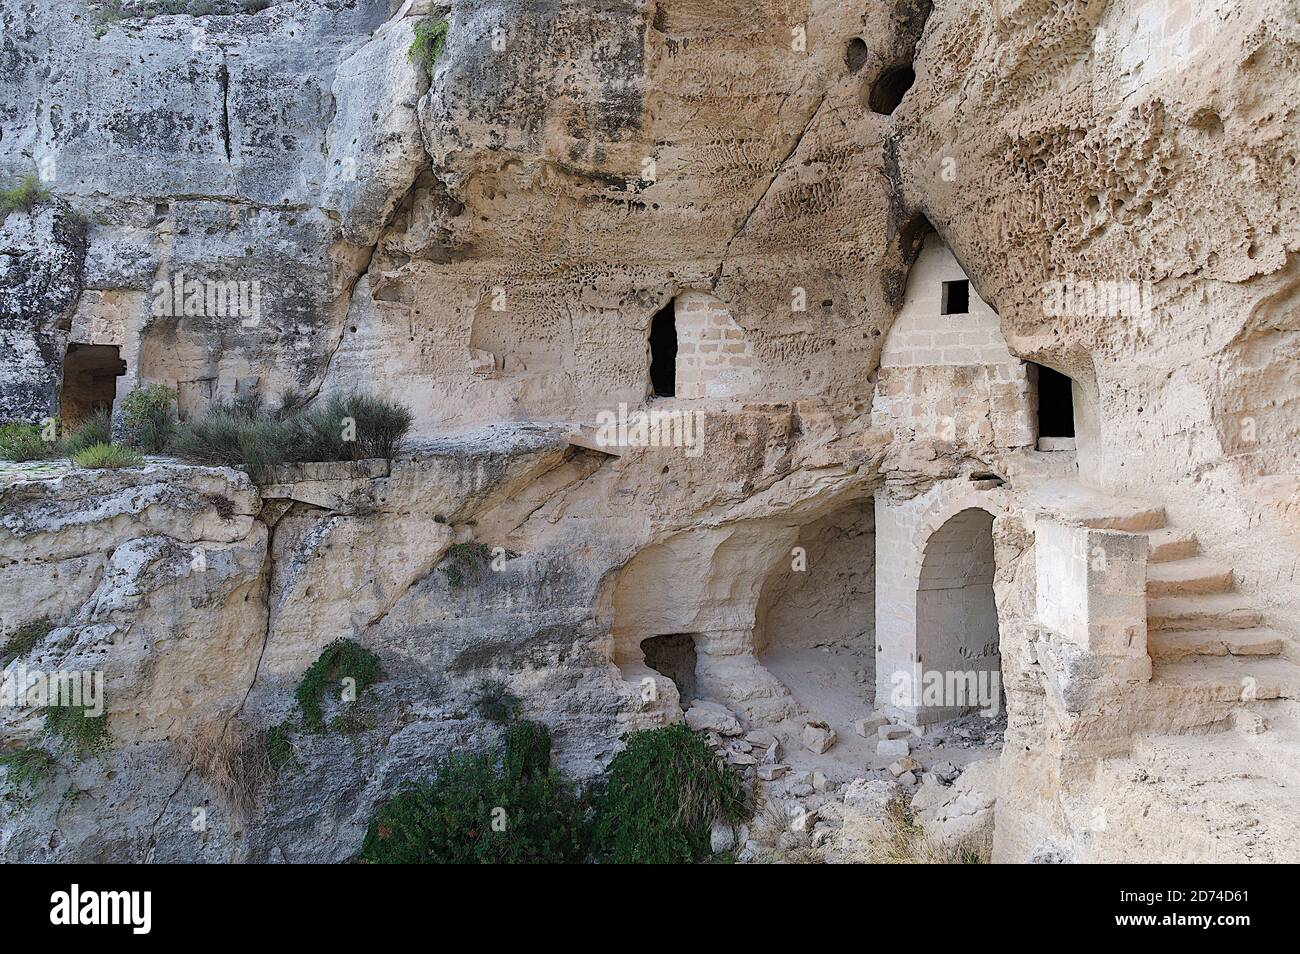 Le complexe Ofra - Matera est une agglomération de grottes qui se développe le long d'un mur de roche surplombant la Gravina, sur quatre niveaux communiquant à travers Banque D'Images